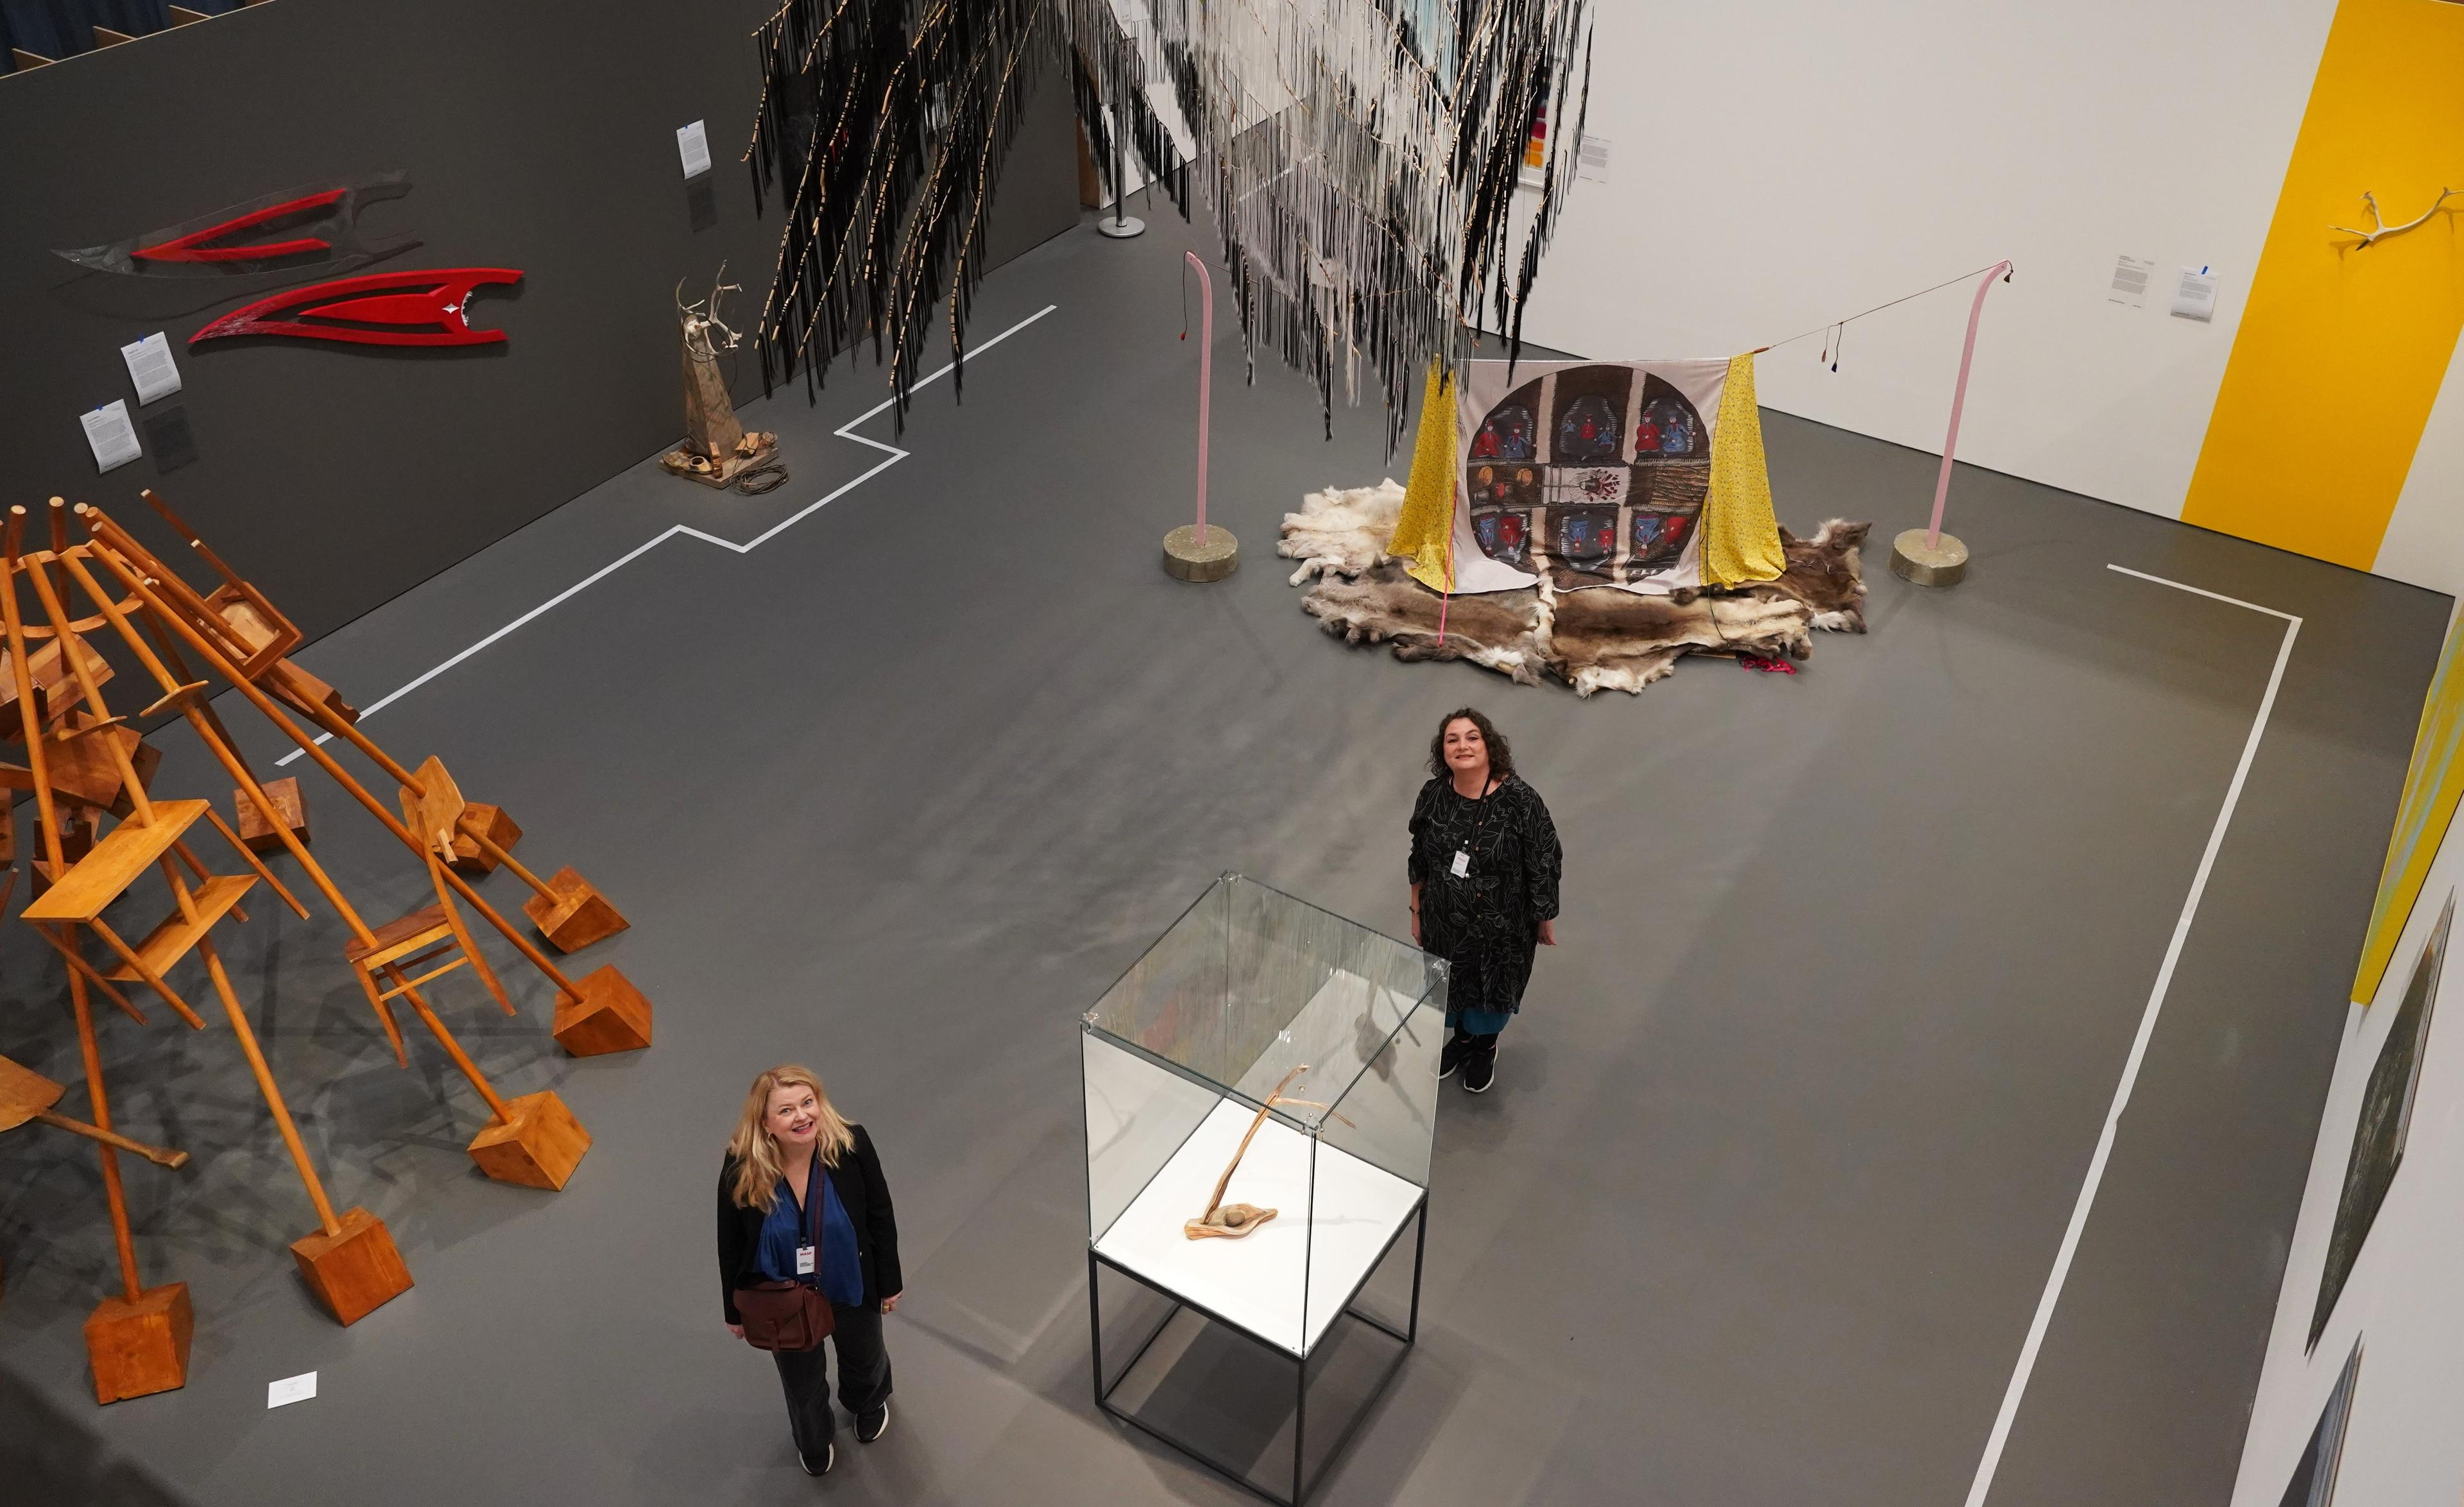 To personer i et utstillingsrom, med installasjoner og objekter